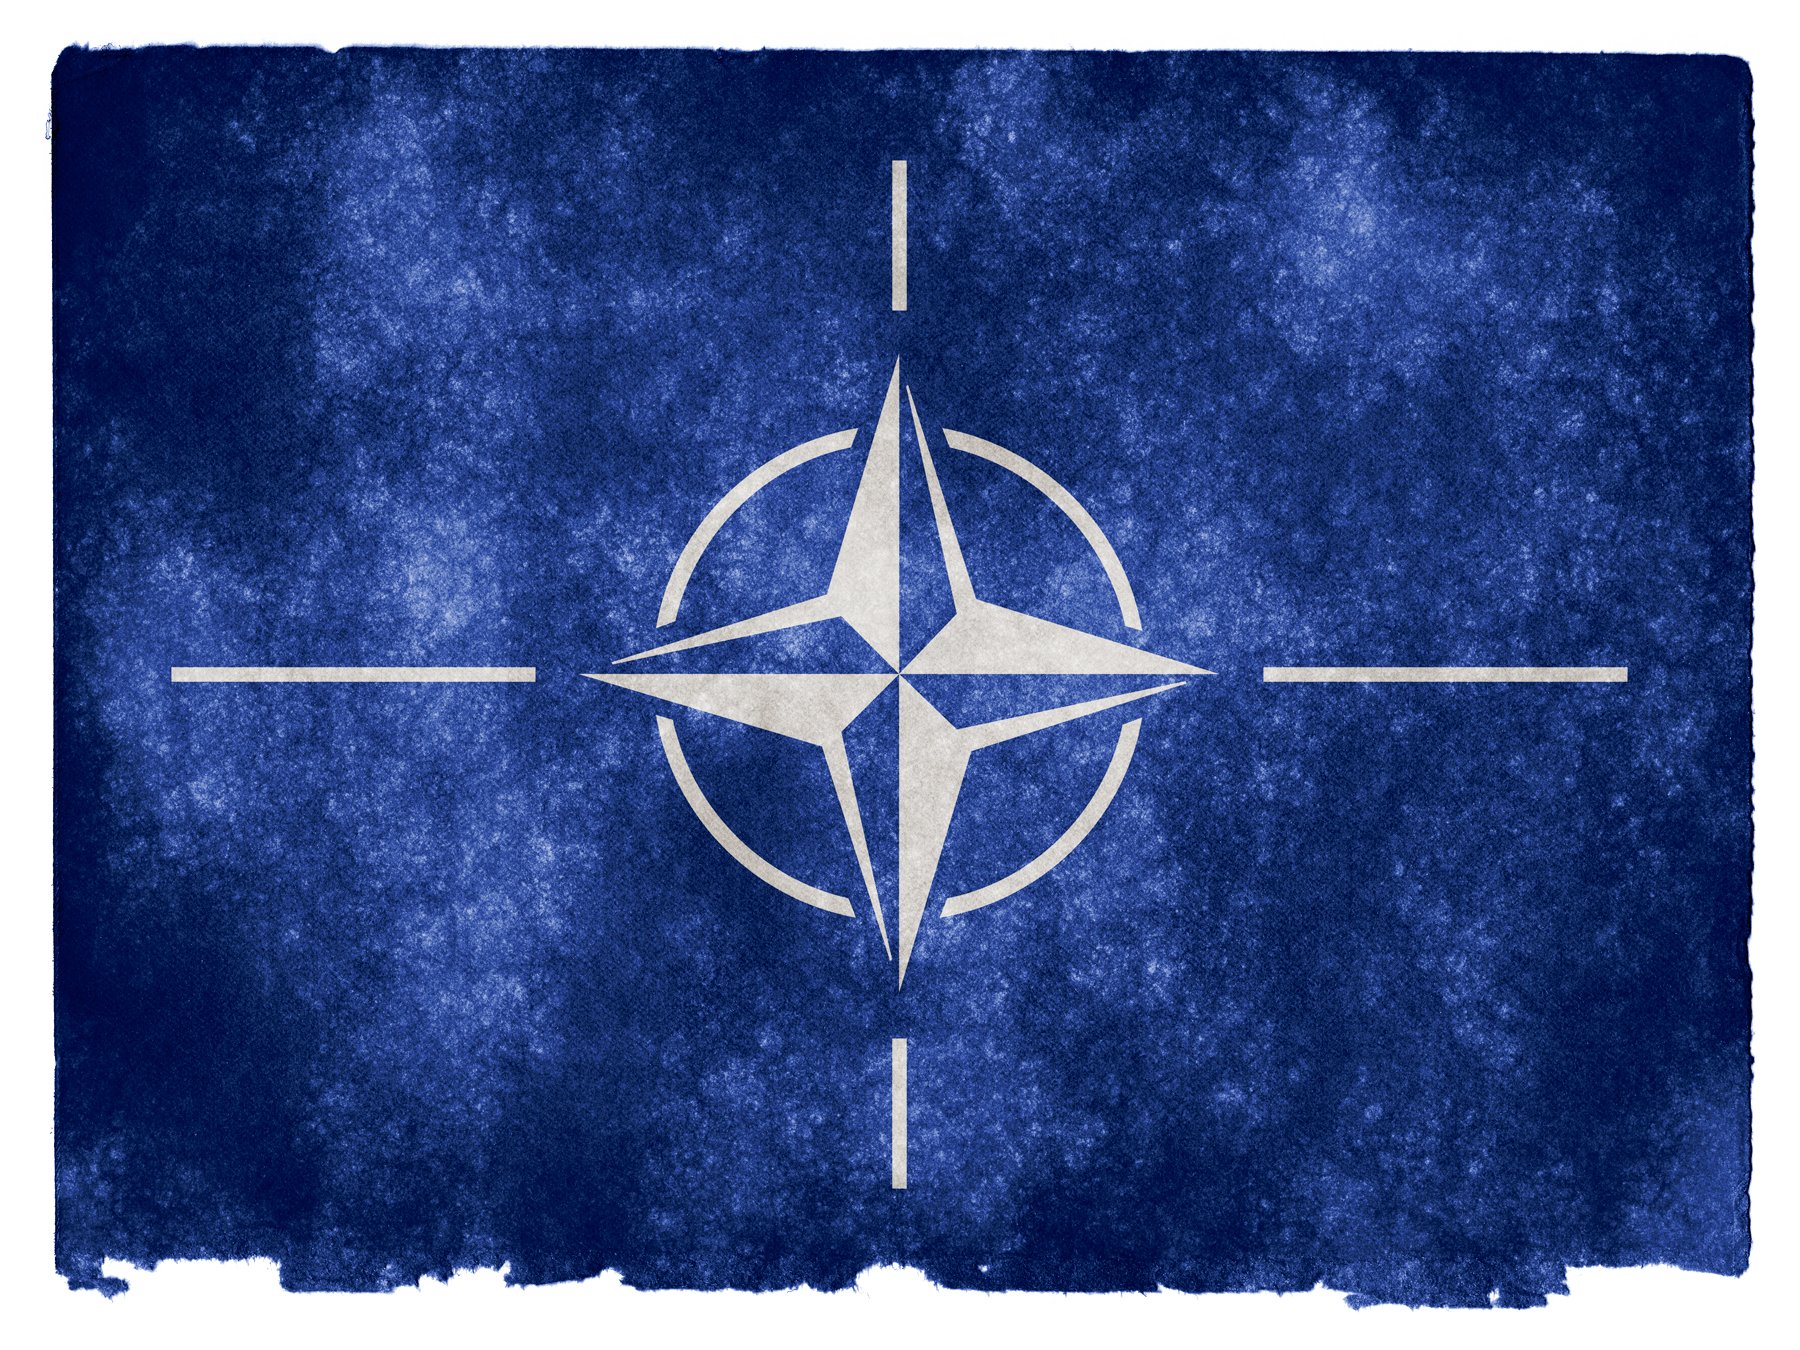 L'OTAN demana una solució "dins l'ordre constitucional" a la crisi catalana